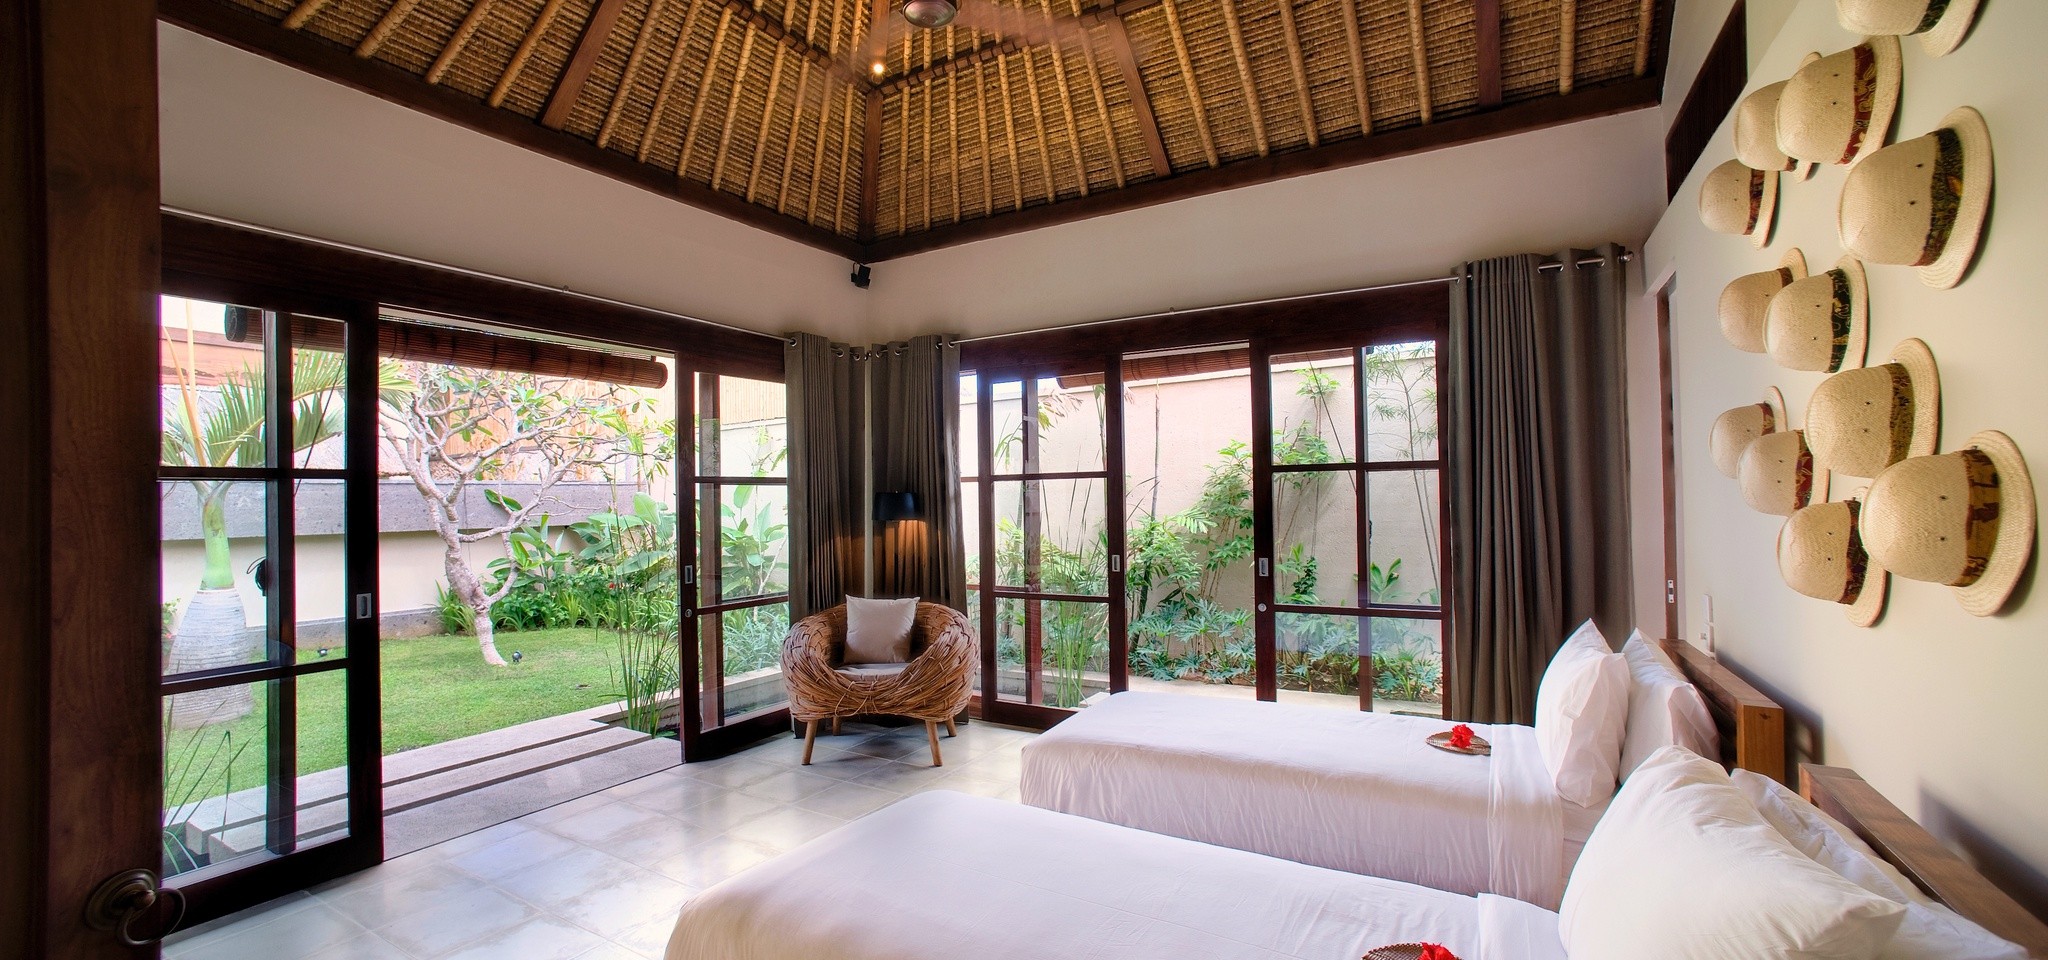 VillaMelissa Bedroom5 – Villa Melissa – Bali – Indonesia